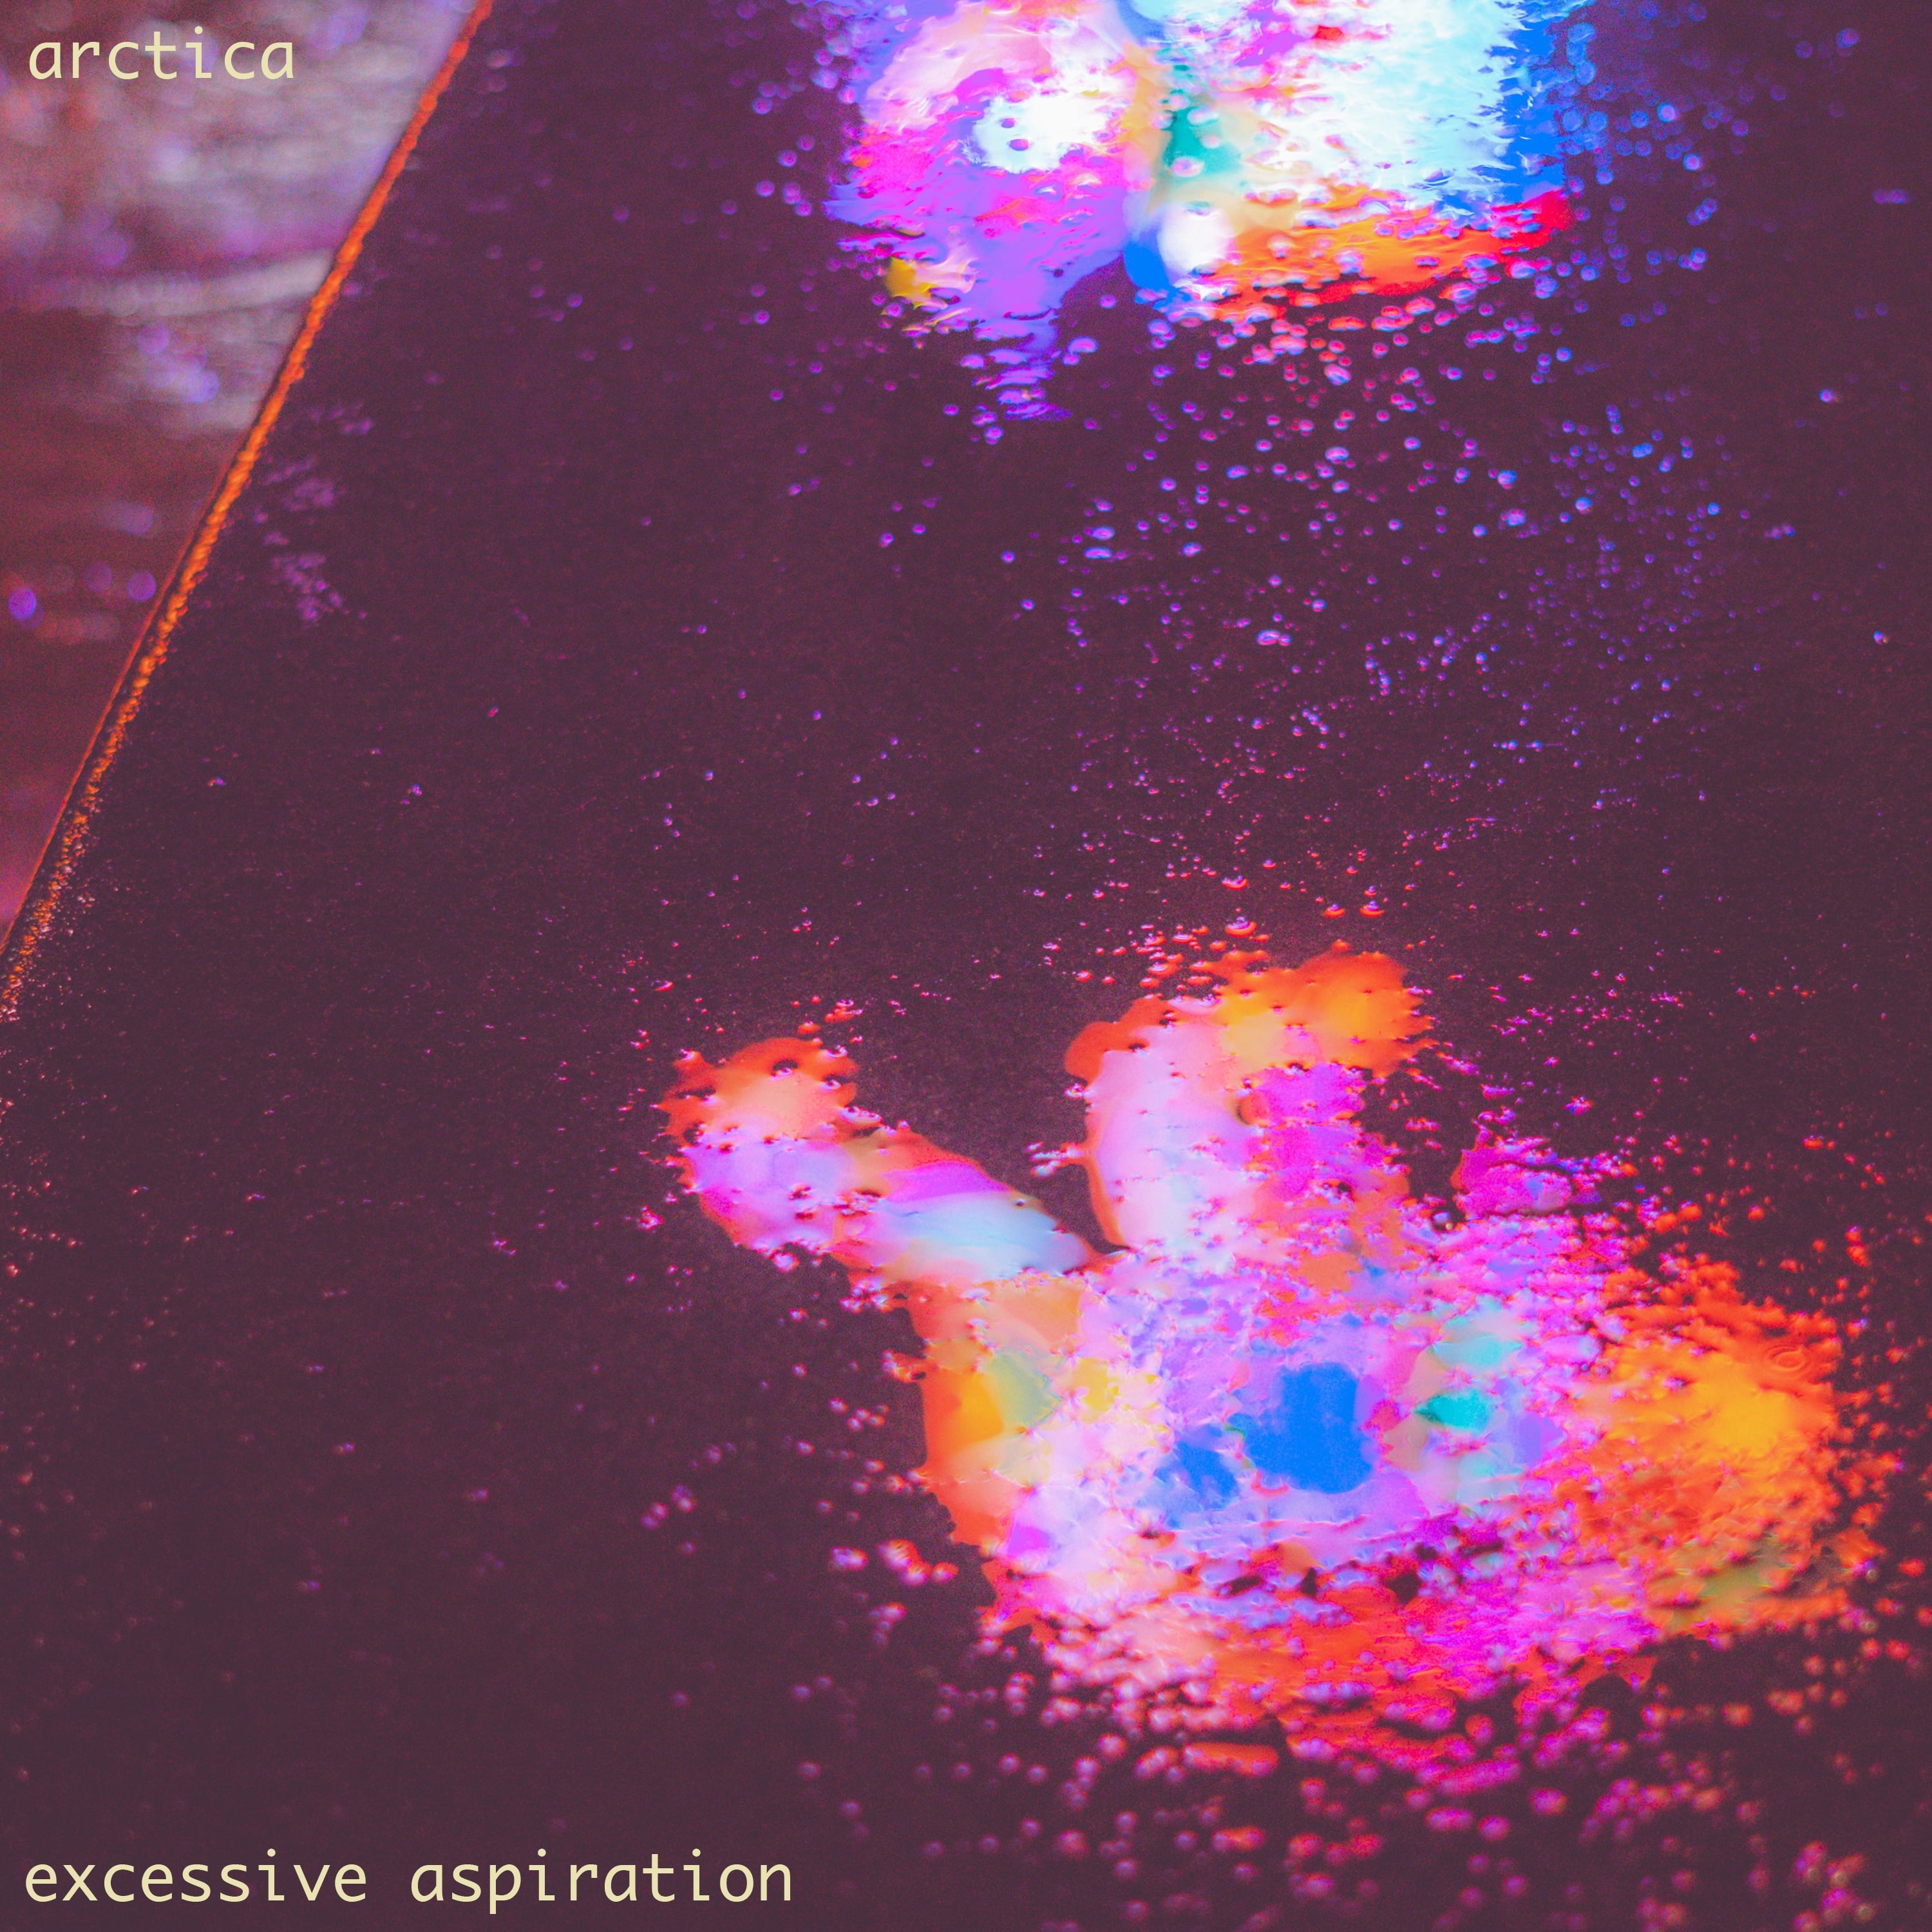 Excessive Aspiration album cover.